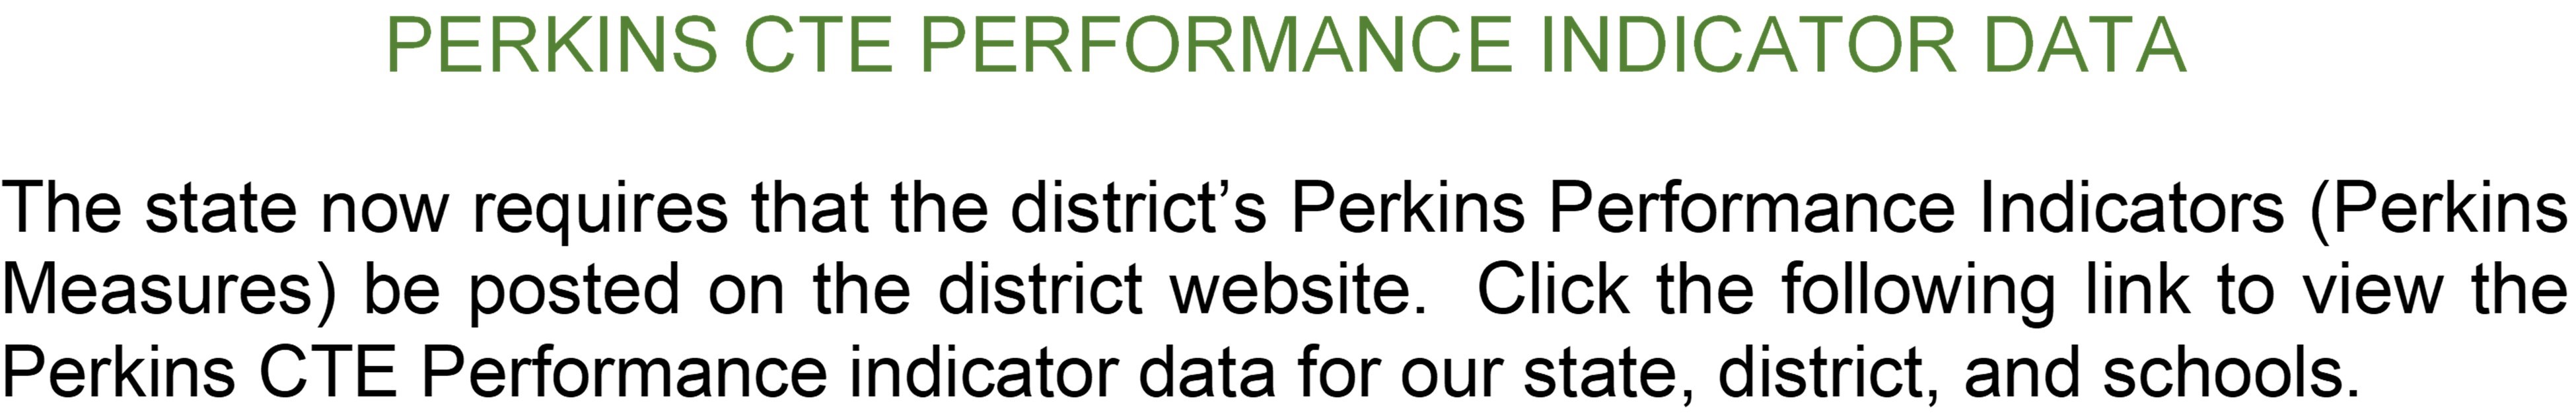 Perkins CTE Data